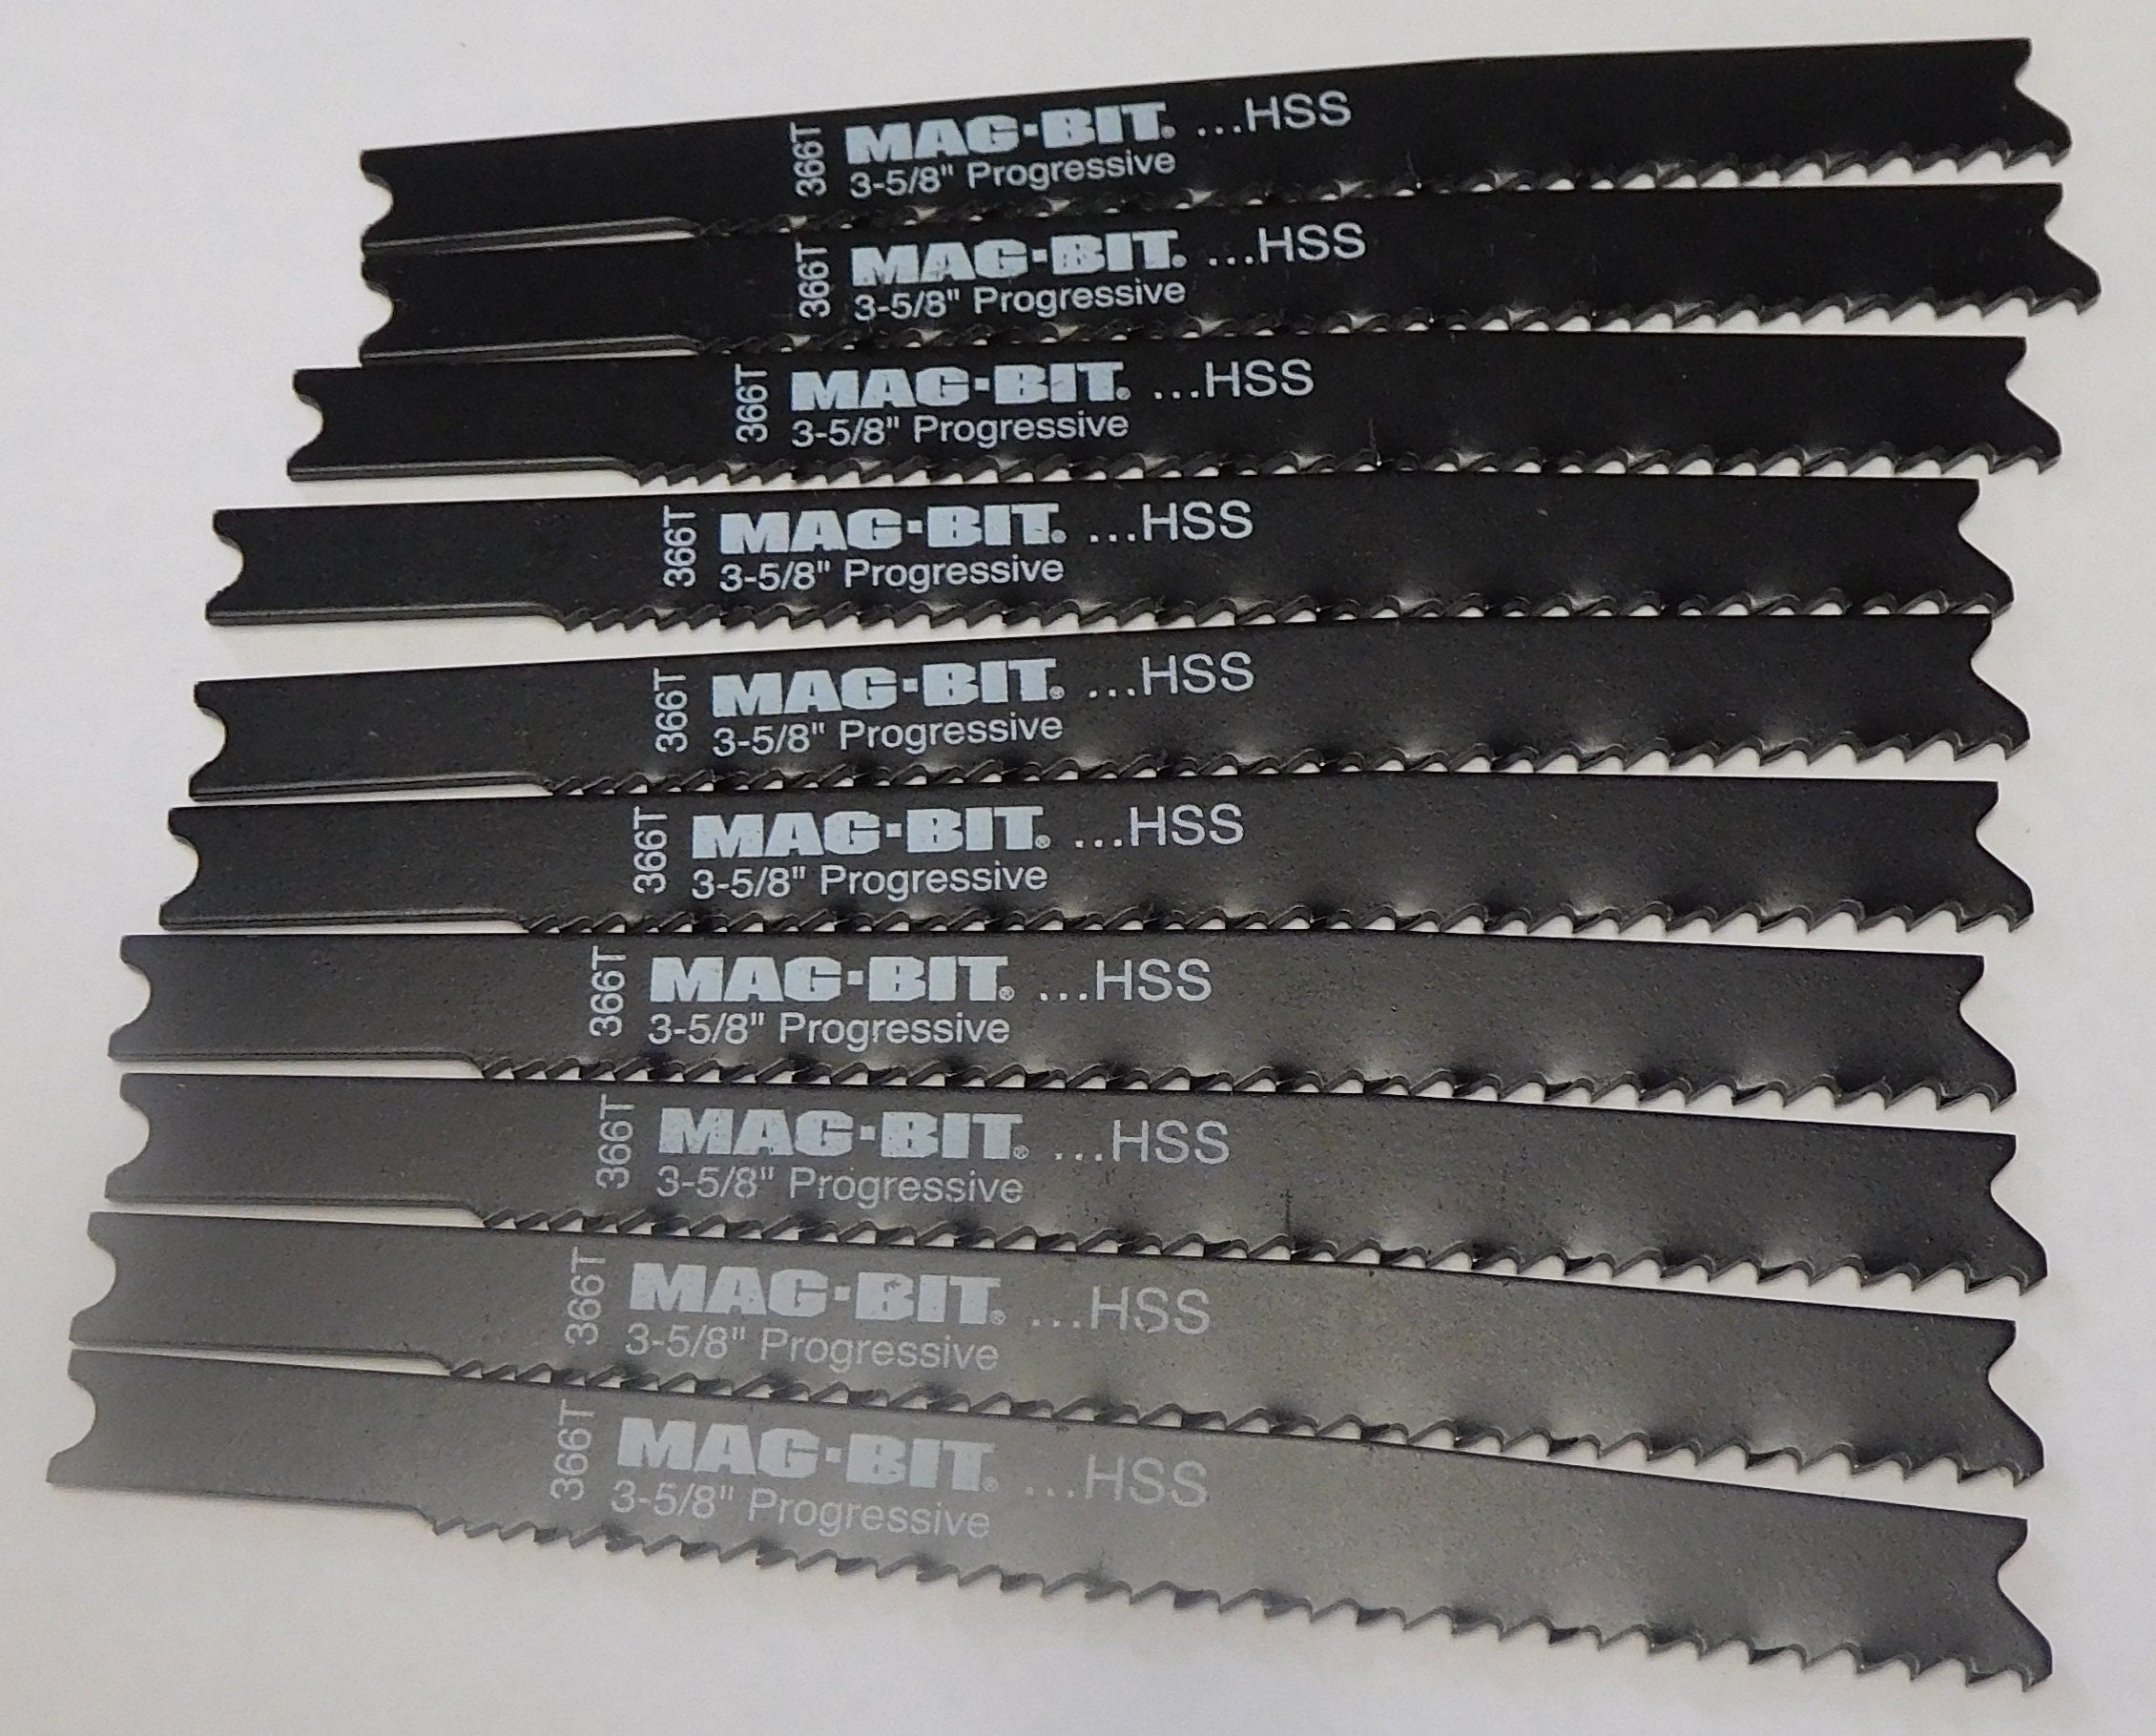 Mag-Bit U-3-5/8" x Progressive HSS Jig Saw Blades 10pc 366T